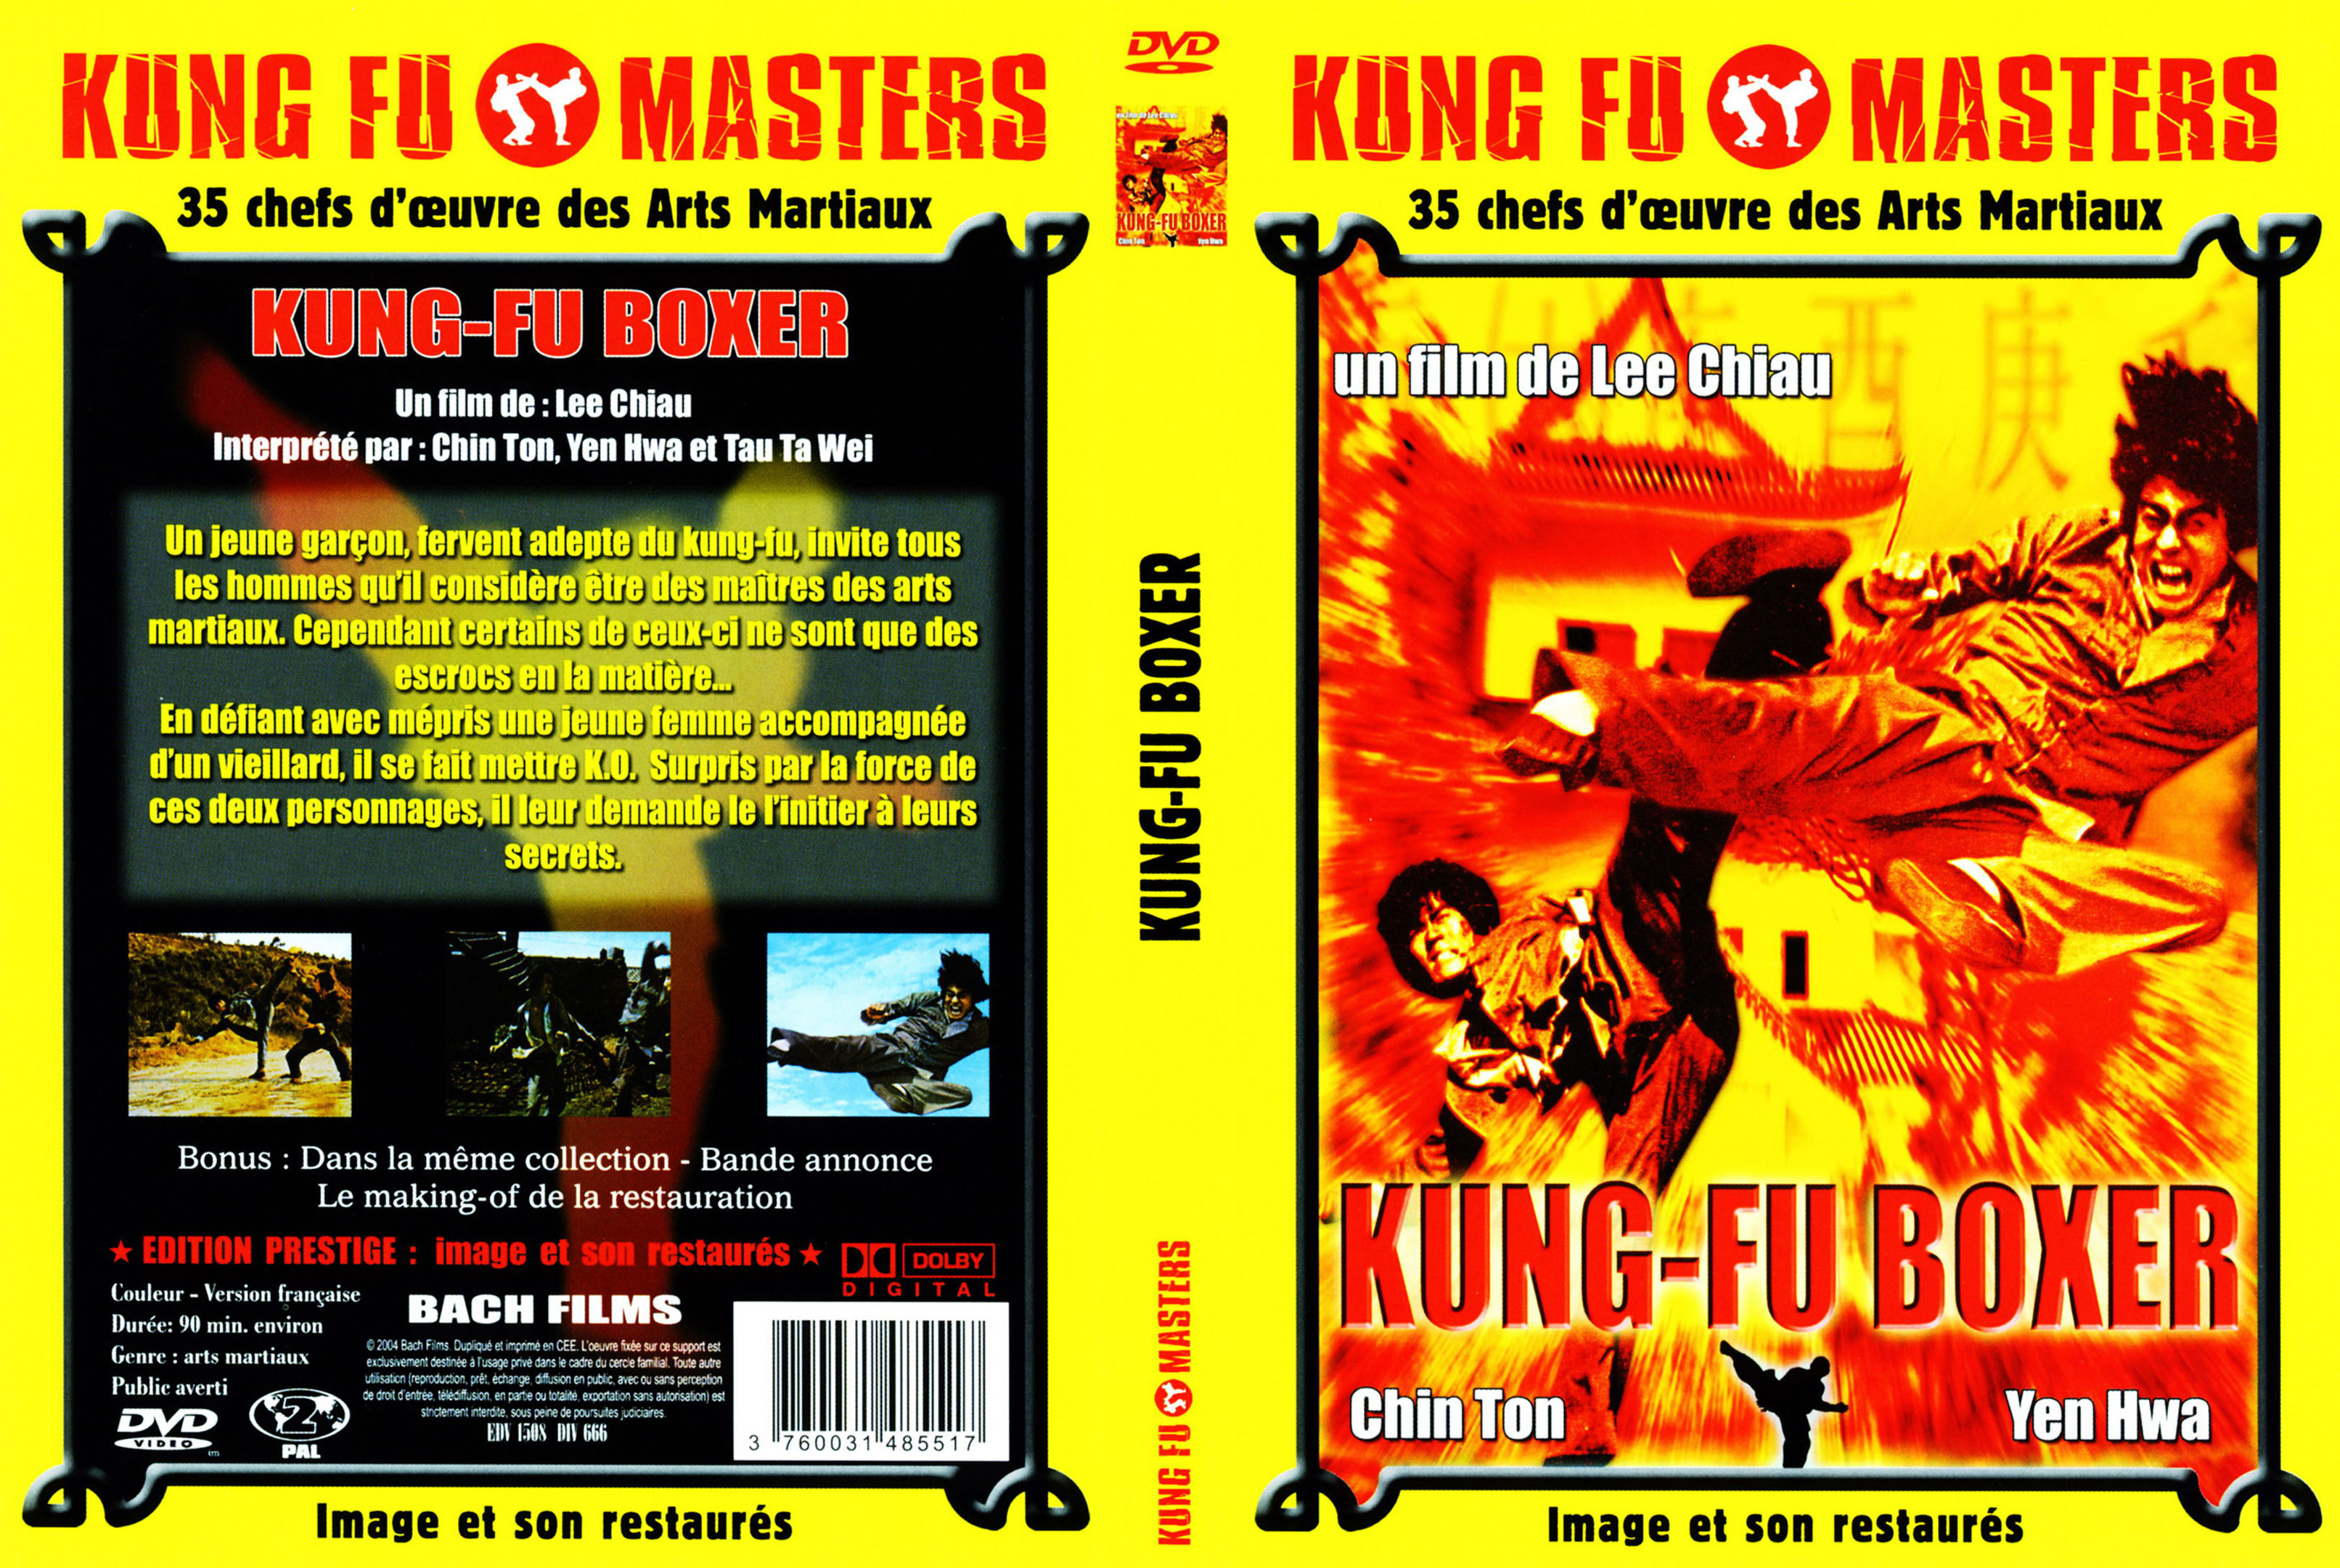 Jaquette DVD Kung fu boxer v2